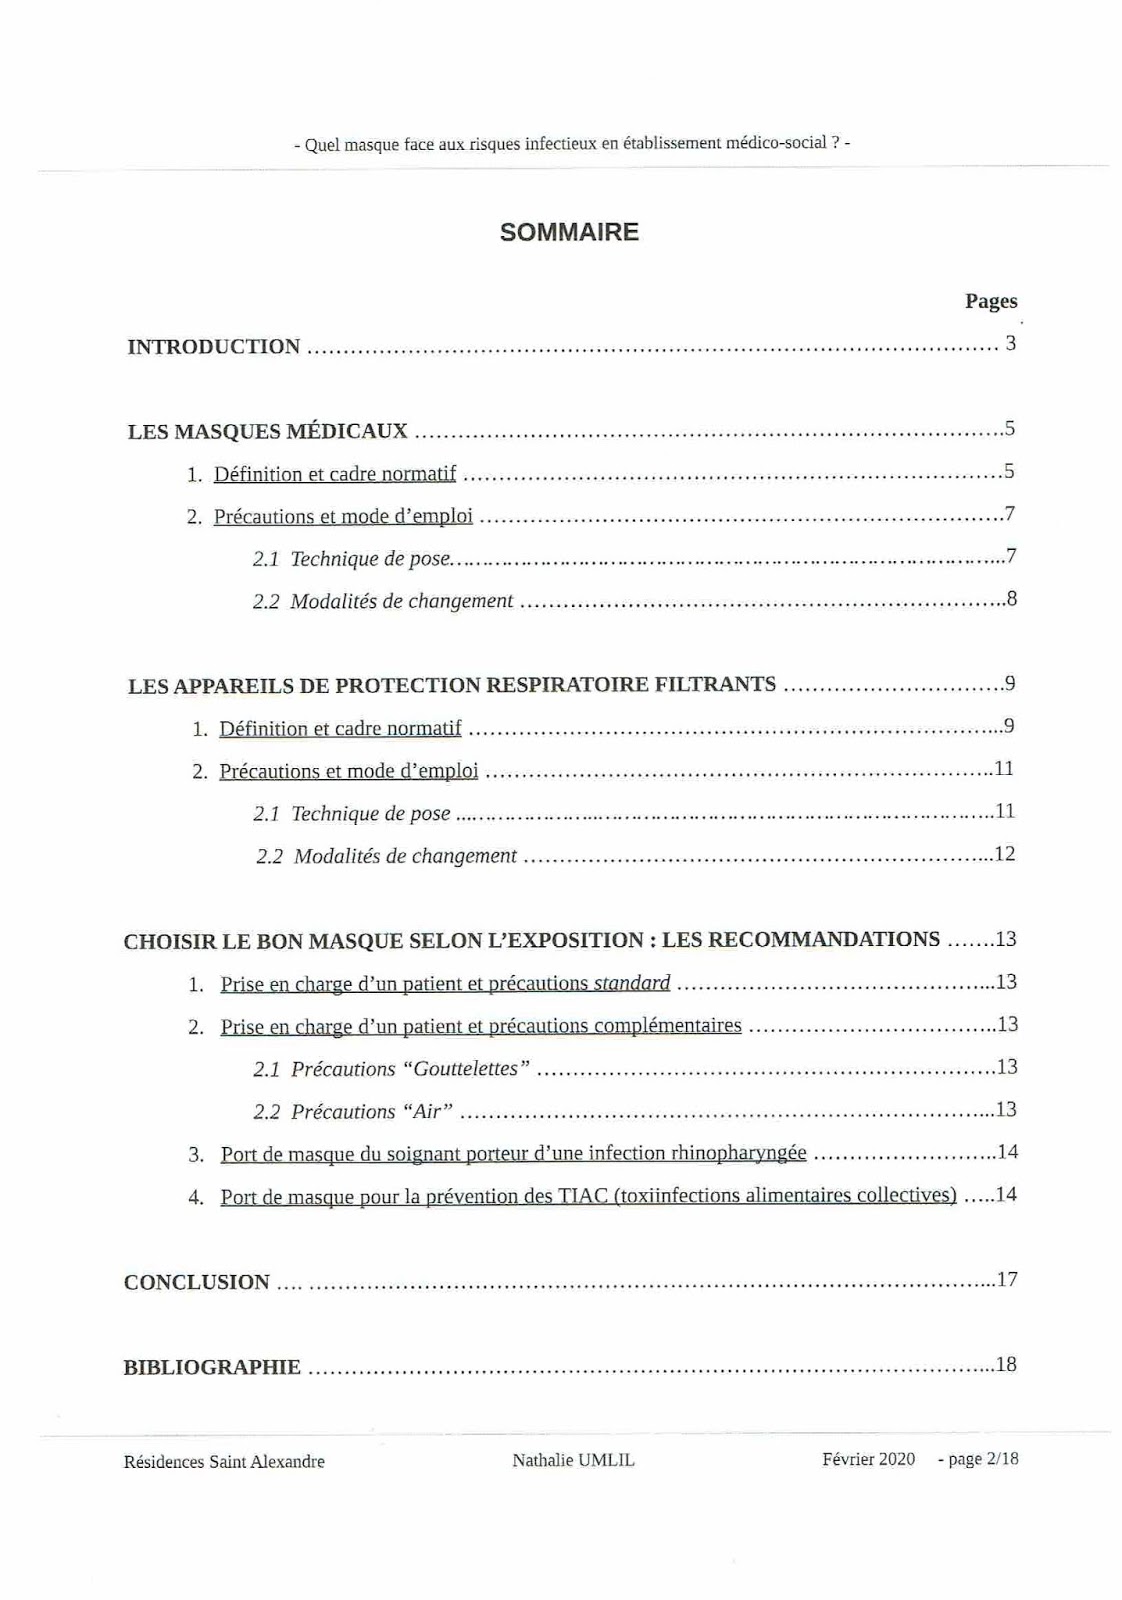 ARTICLES du Dr Amine UMLIL du CTIAP de CHOLET -1- - Page 8 Quel_m10